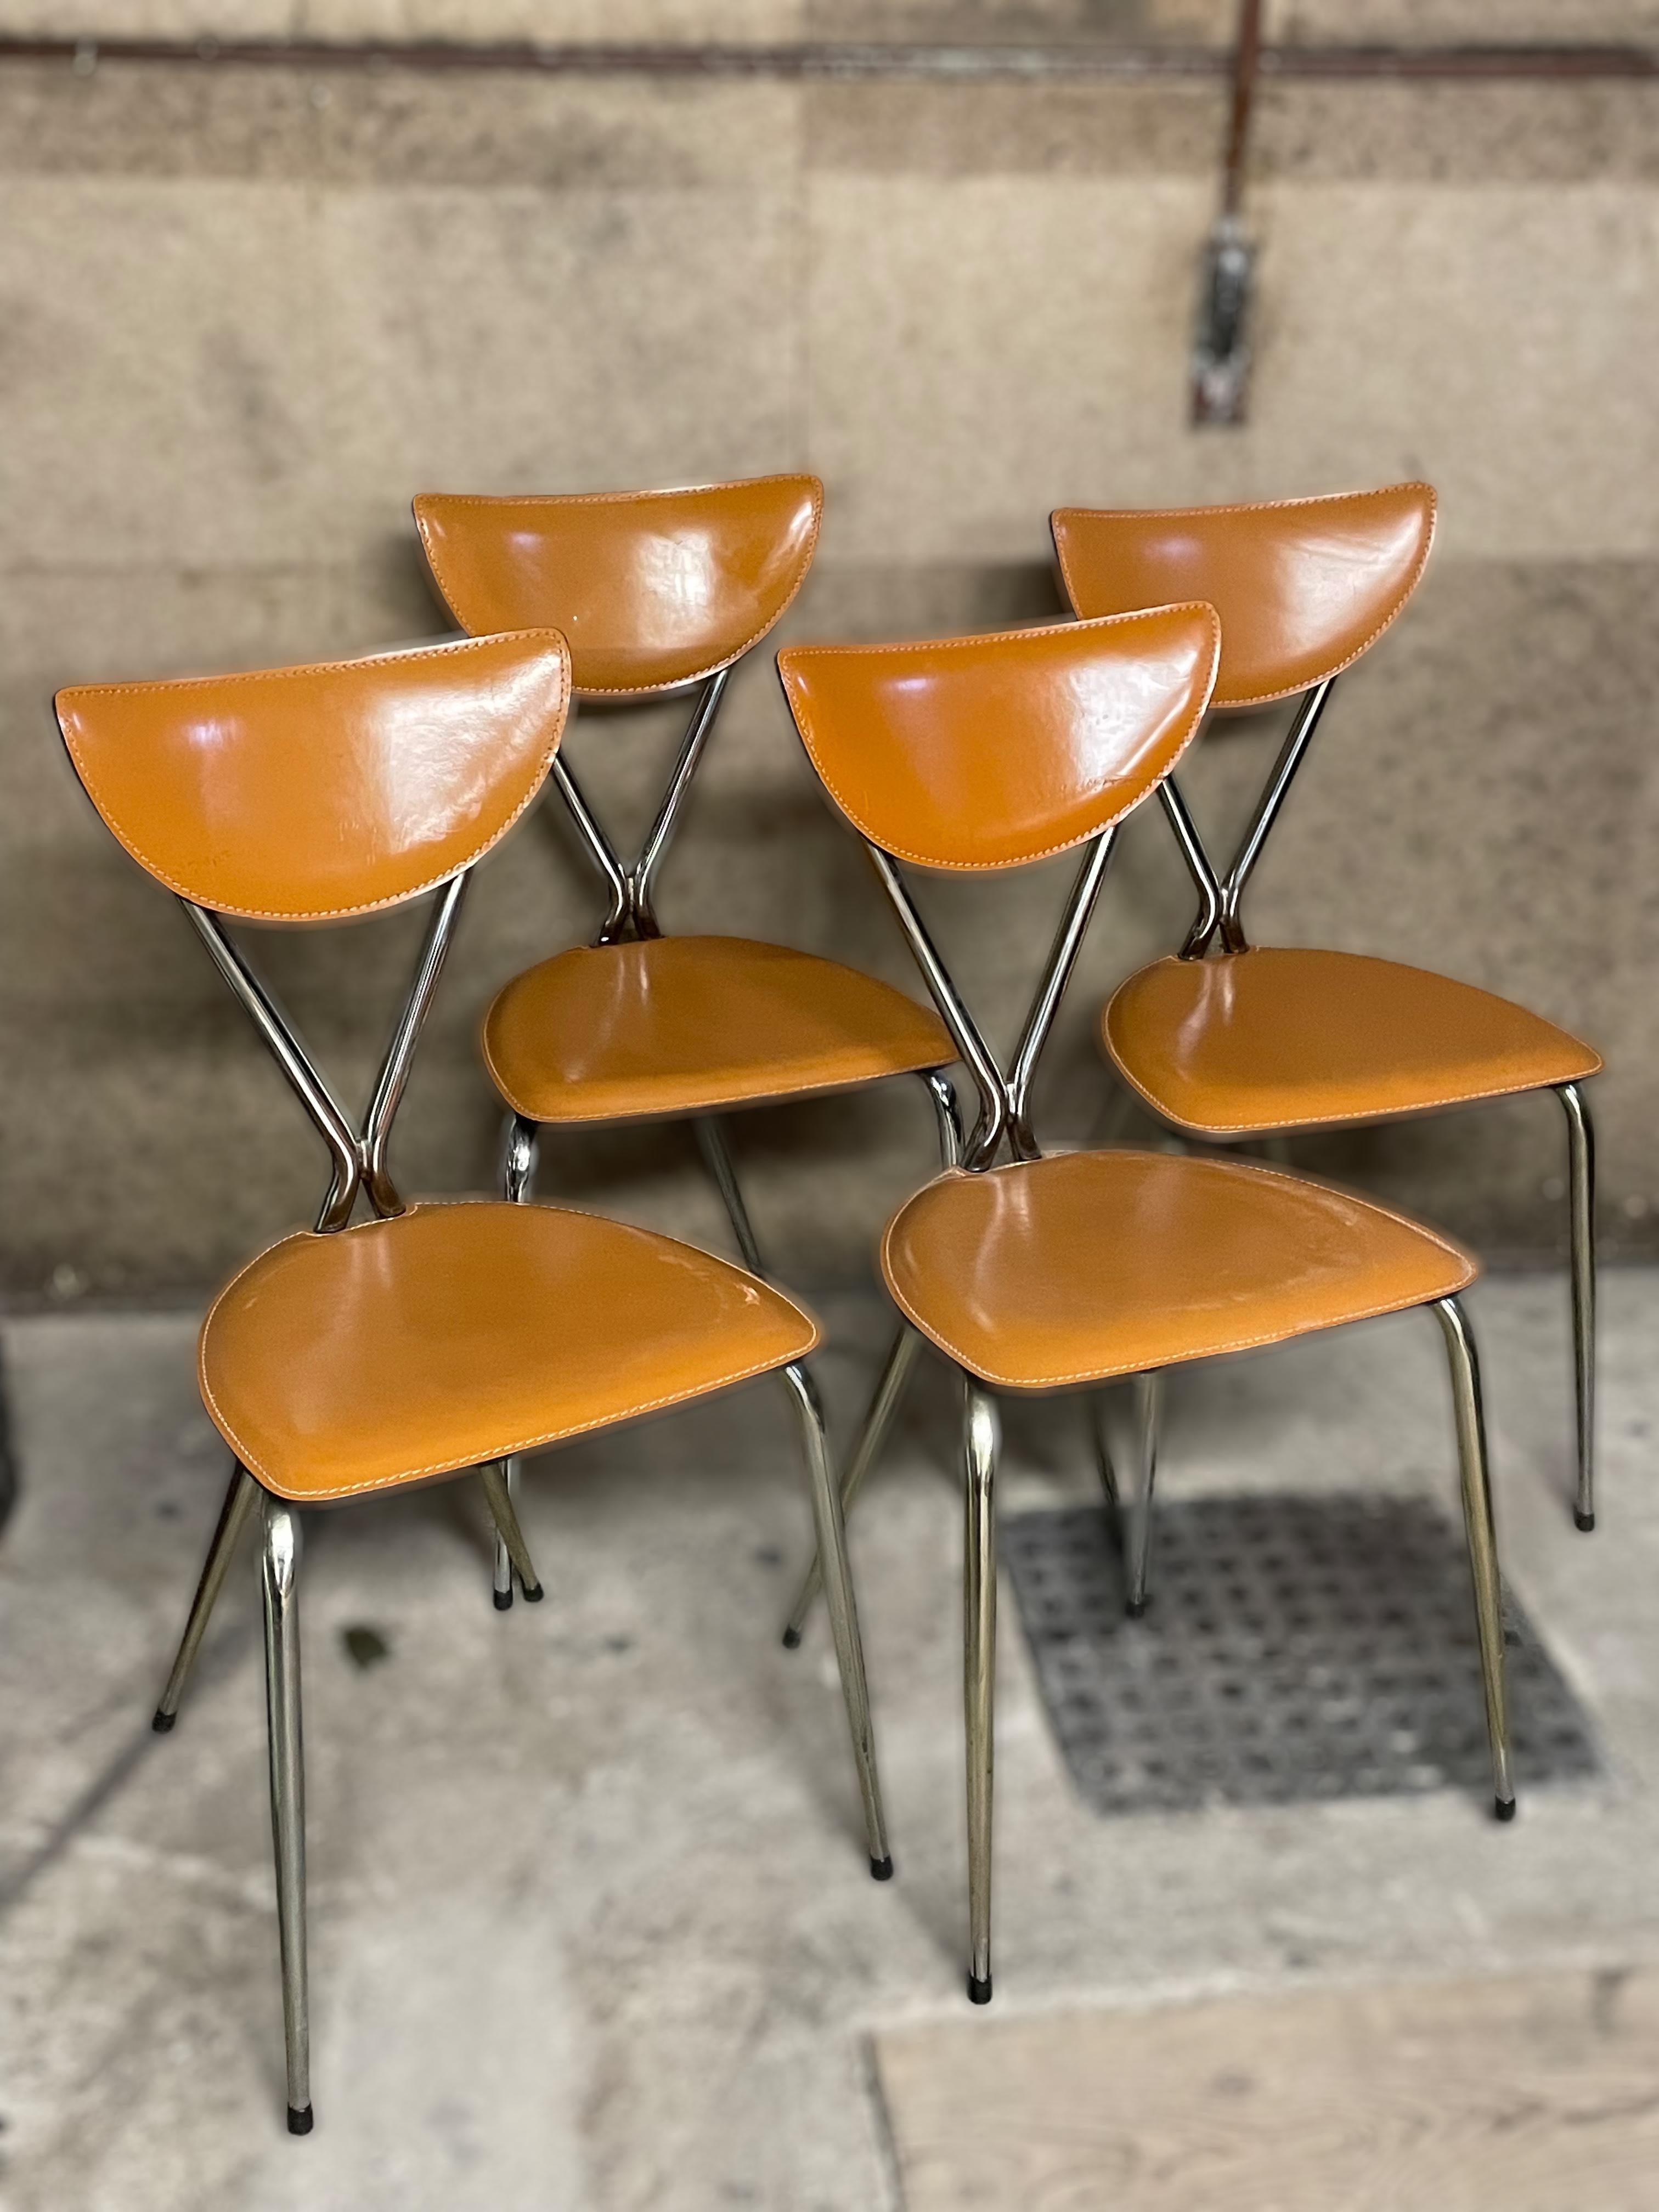 Un magnifique ensemble de quatre chaises de salle à manger 'Stiletto'. Il s'agit du modèle Arrben Bernardina en cuir Tan ou Cognac. Marqué avec la marque du fabricant. En état d'usage et encore très bon. Un bel ajout à votre cuisine ou salle à